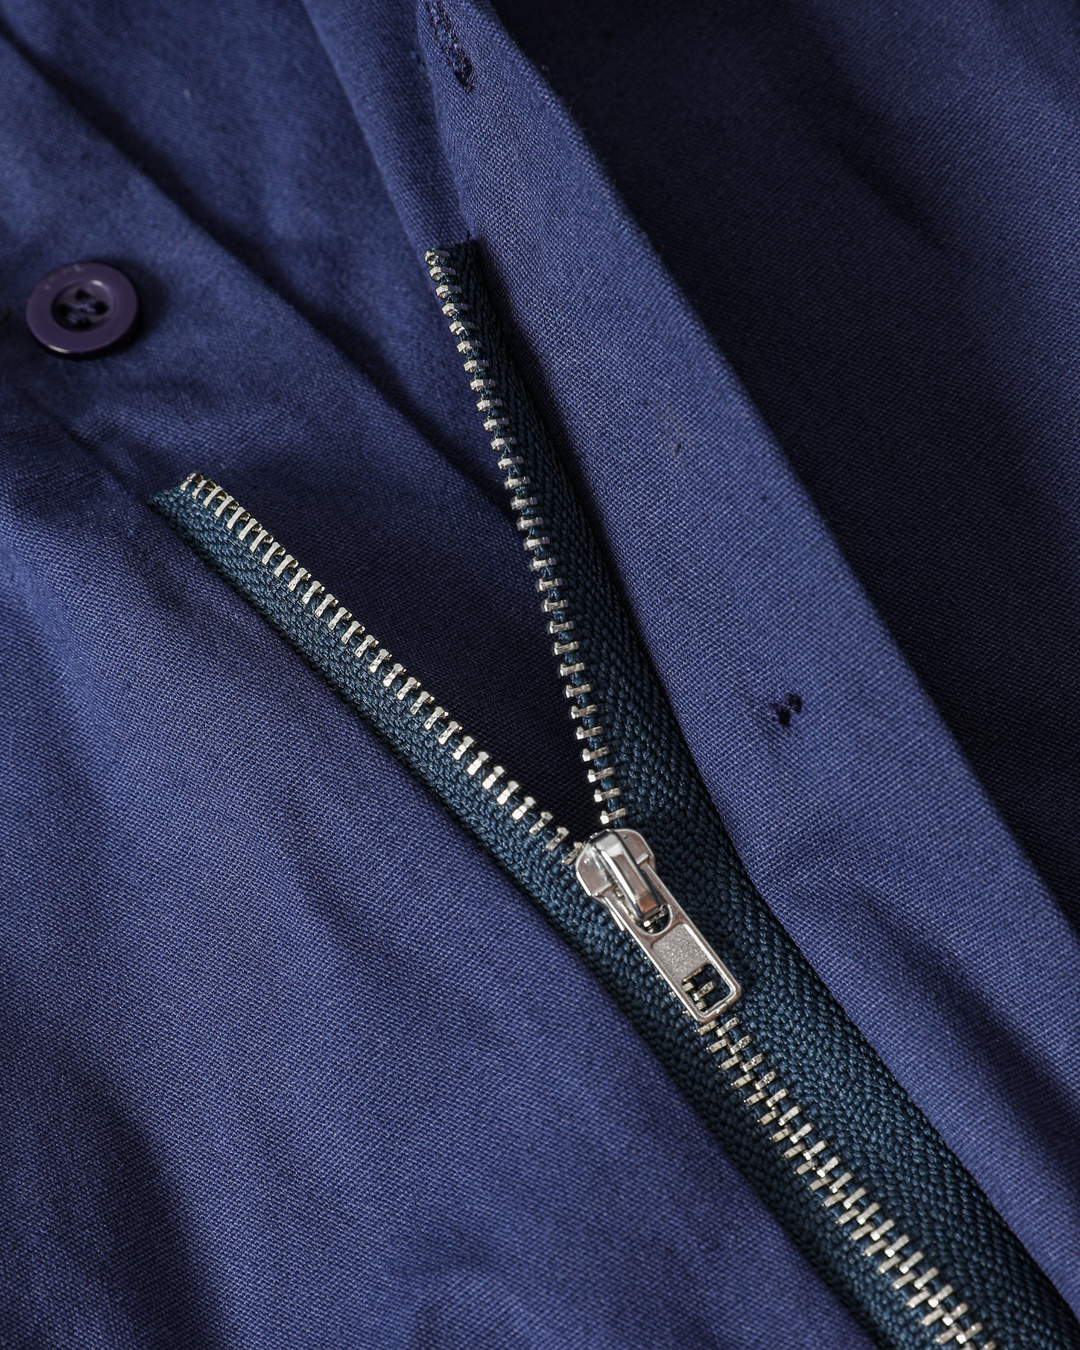 Women's Signature Zipper Blouse - Midnight Blue